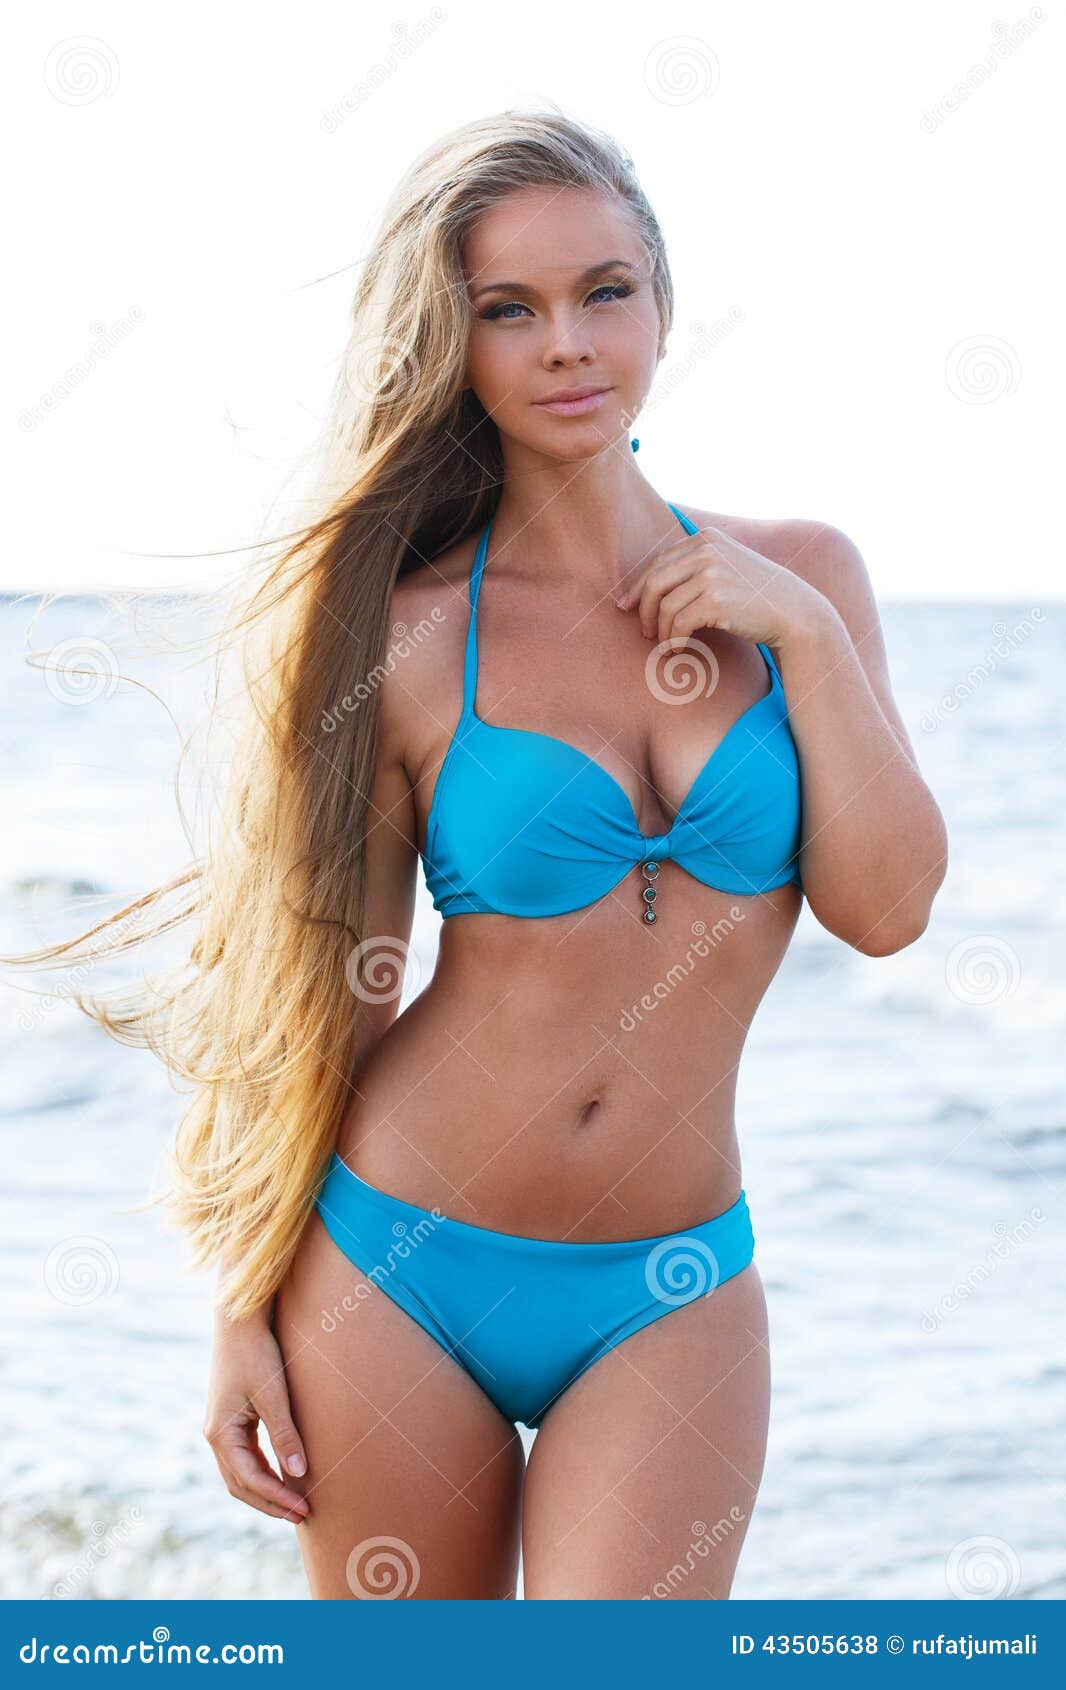 voyeur hot girls at the beach Porn Photos